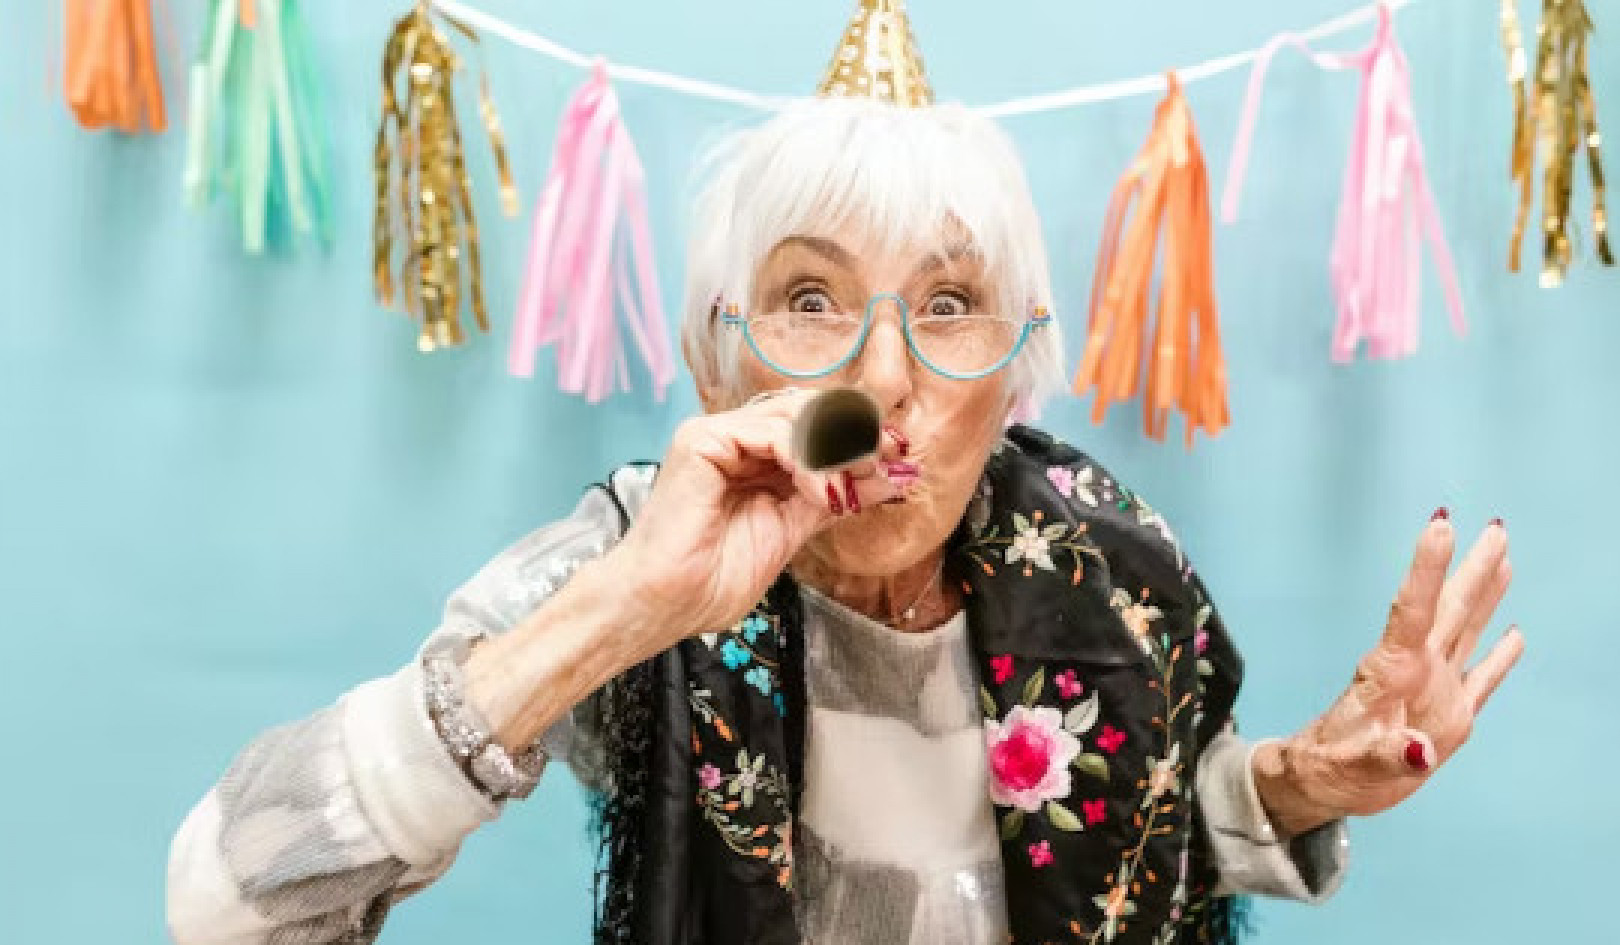 Emeklilikte Doyum Bulmak: Yeni Deneyimleri ve Bağlantıları Kucaklamak